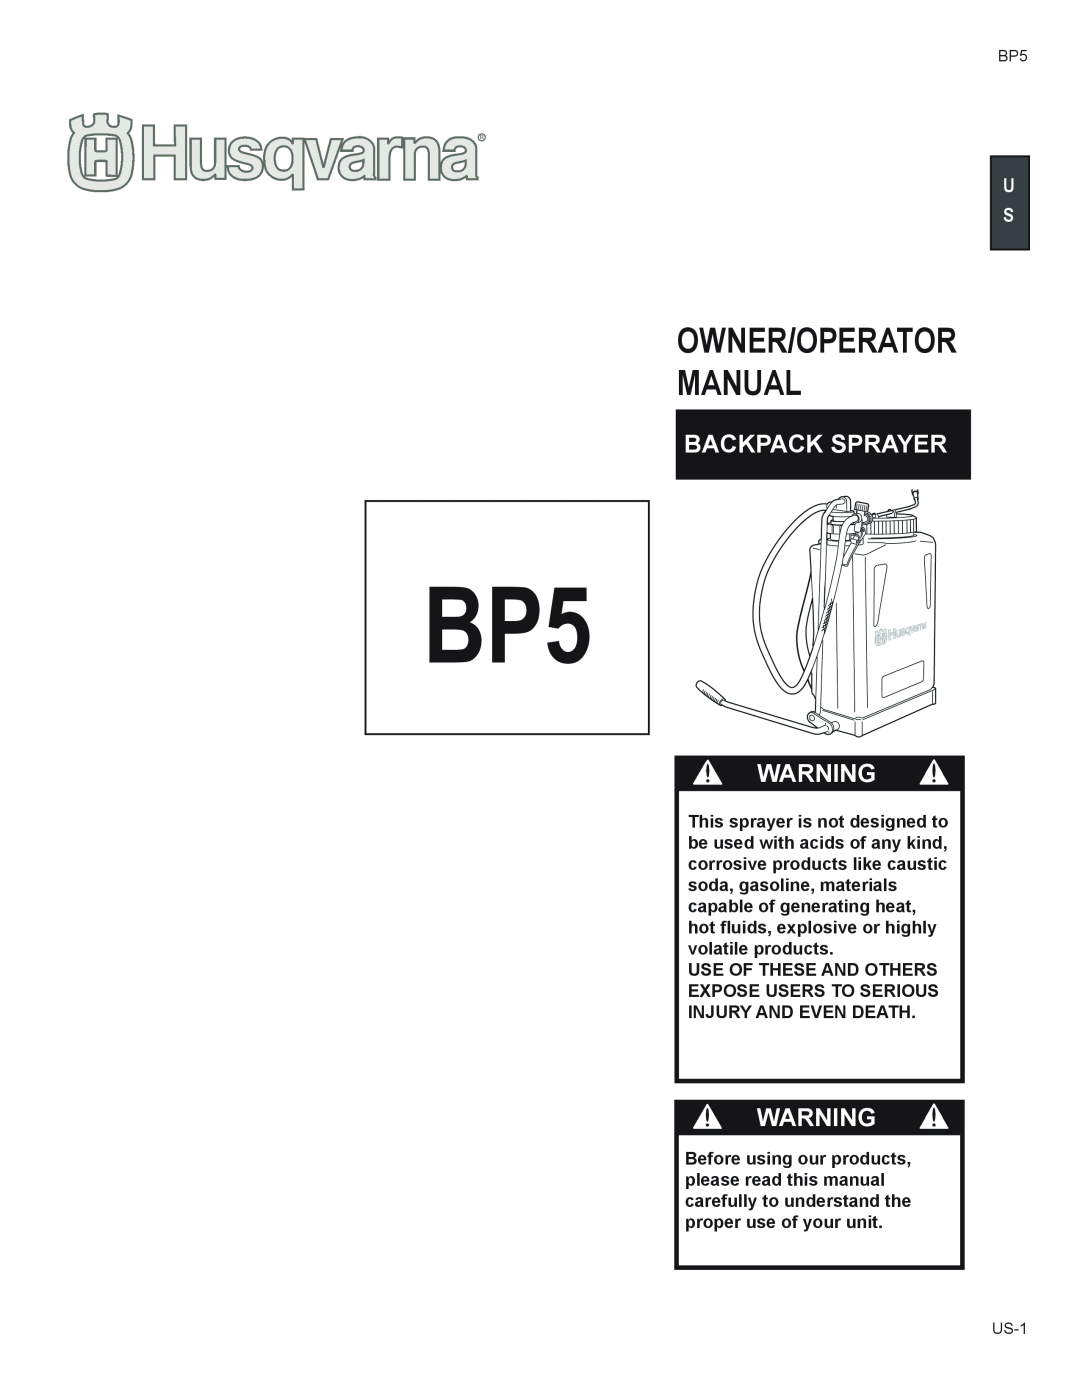 Husqvarna BP5 manual Owner/Operator Manual, Backpack Sprayer 